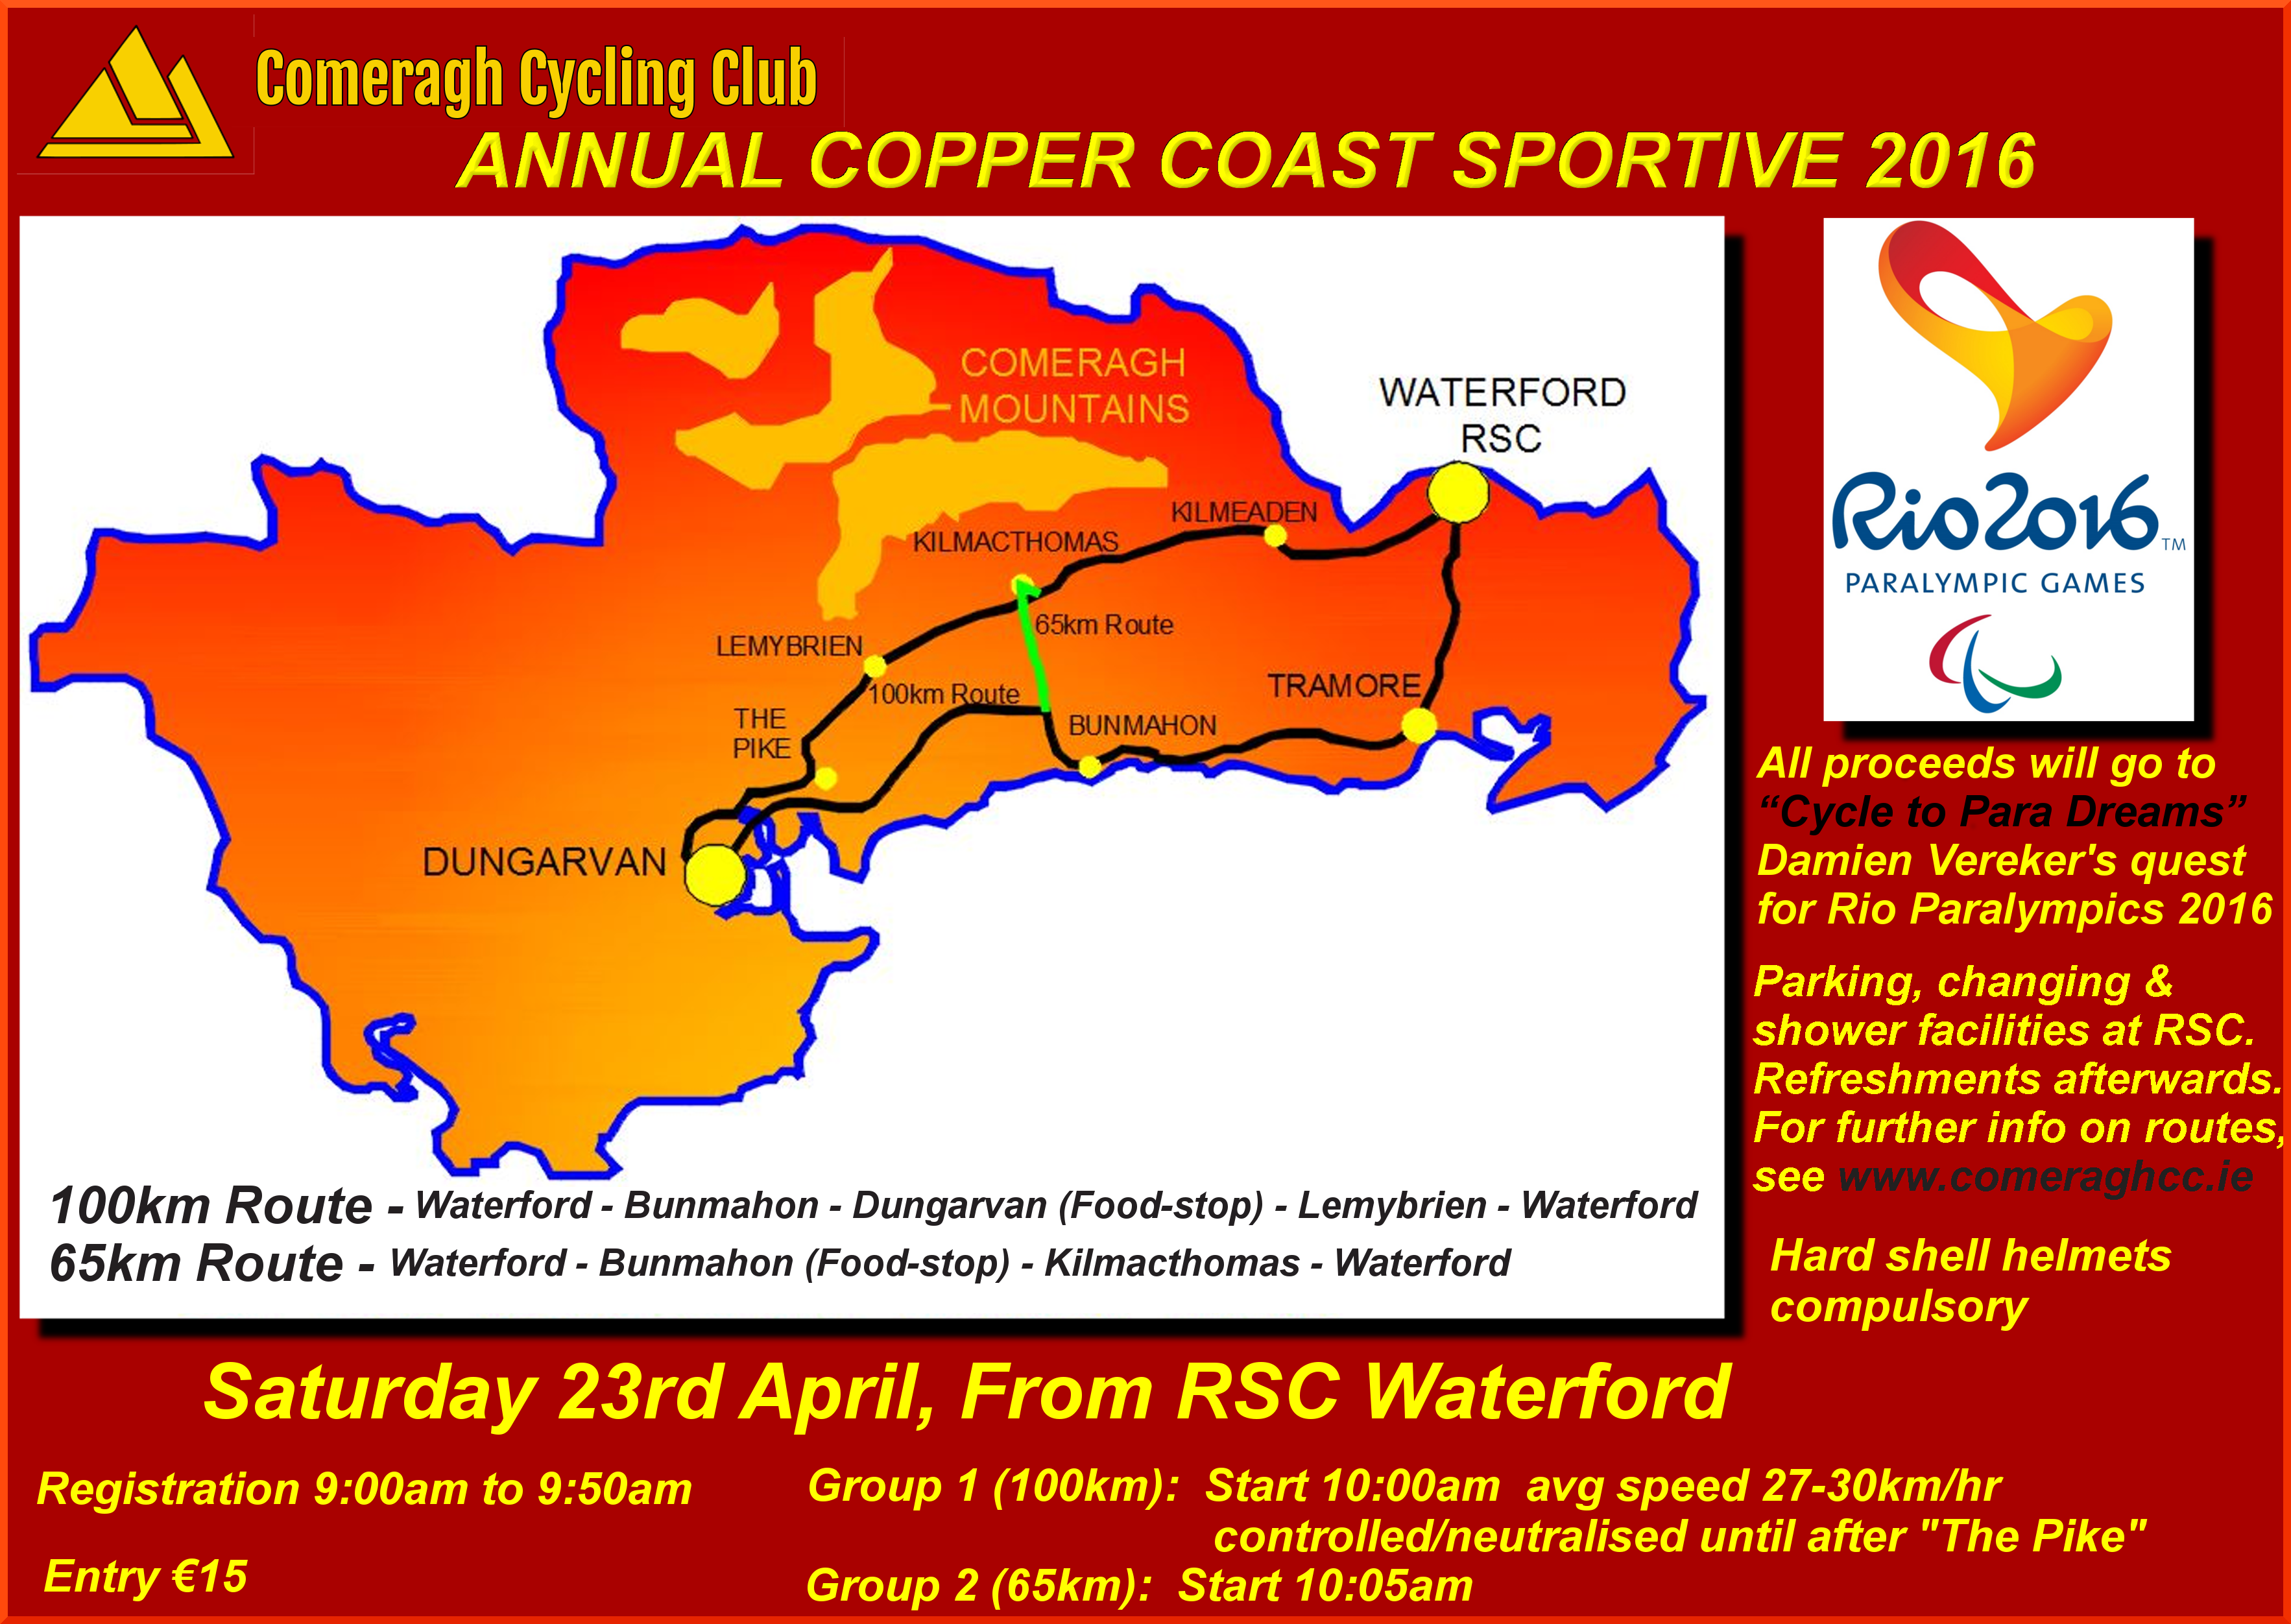 Annual Copper Coast Sportive 2016, Saturday 23rd April